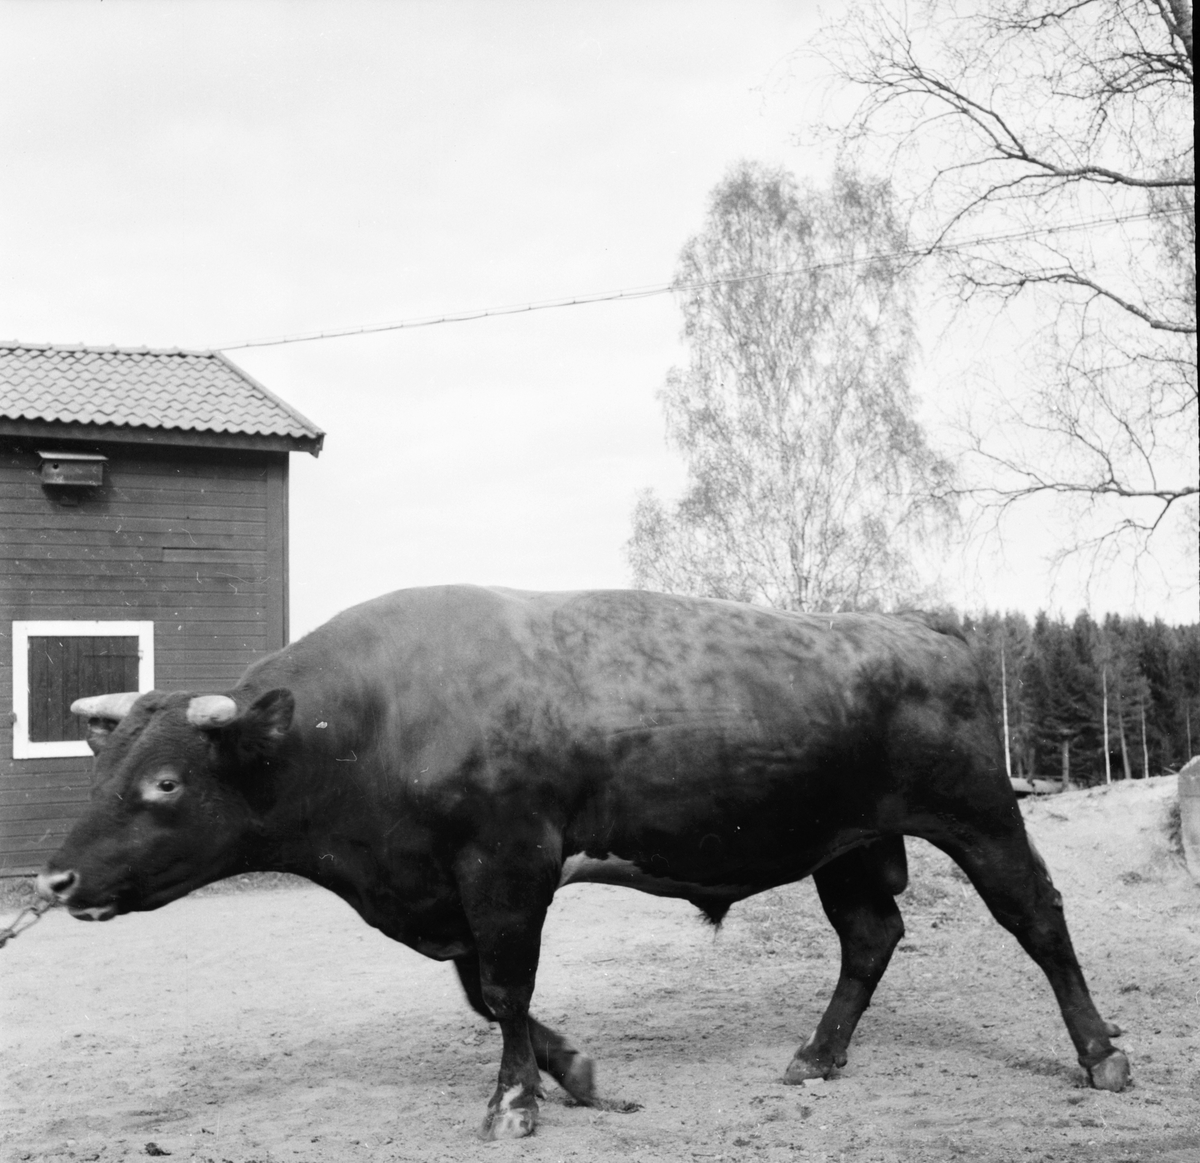 Gävleborgs seminförening årsmöte i Bollnäs.
18/5 1956